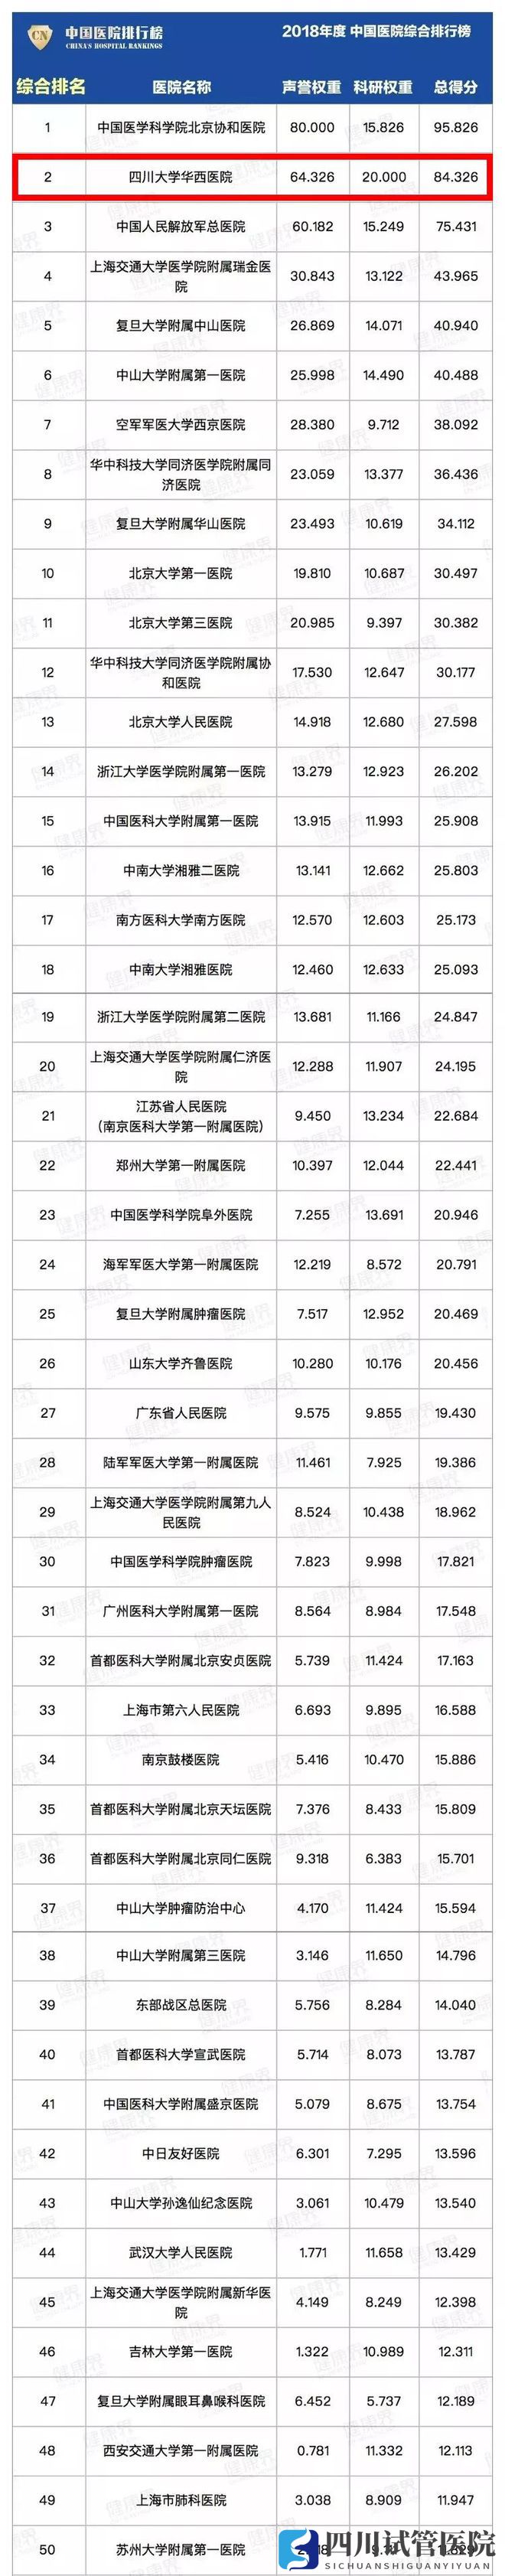 最新中国医院排行榜发布,四川这些医院、专科上榜!